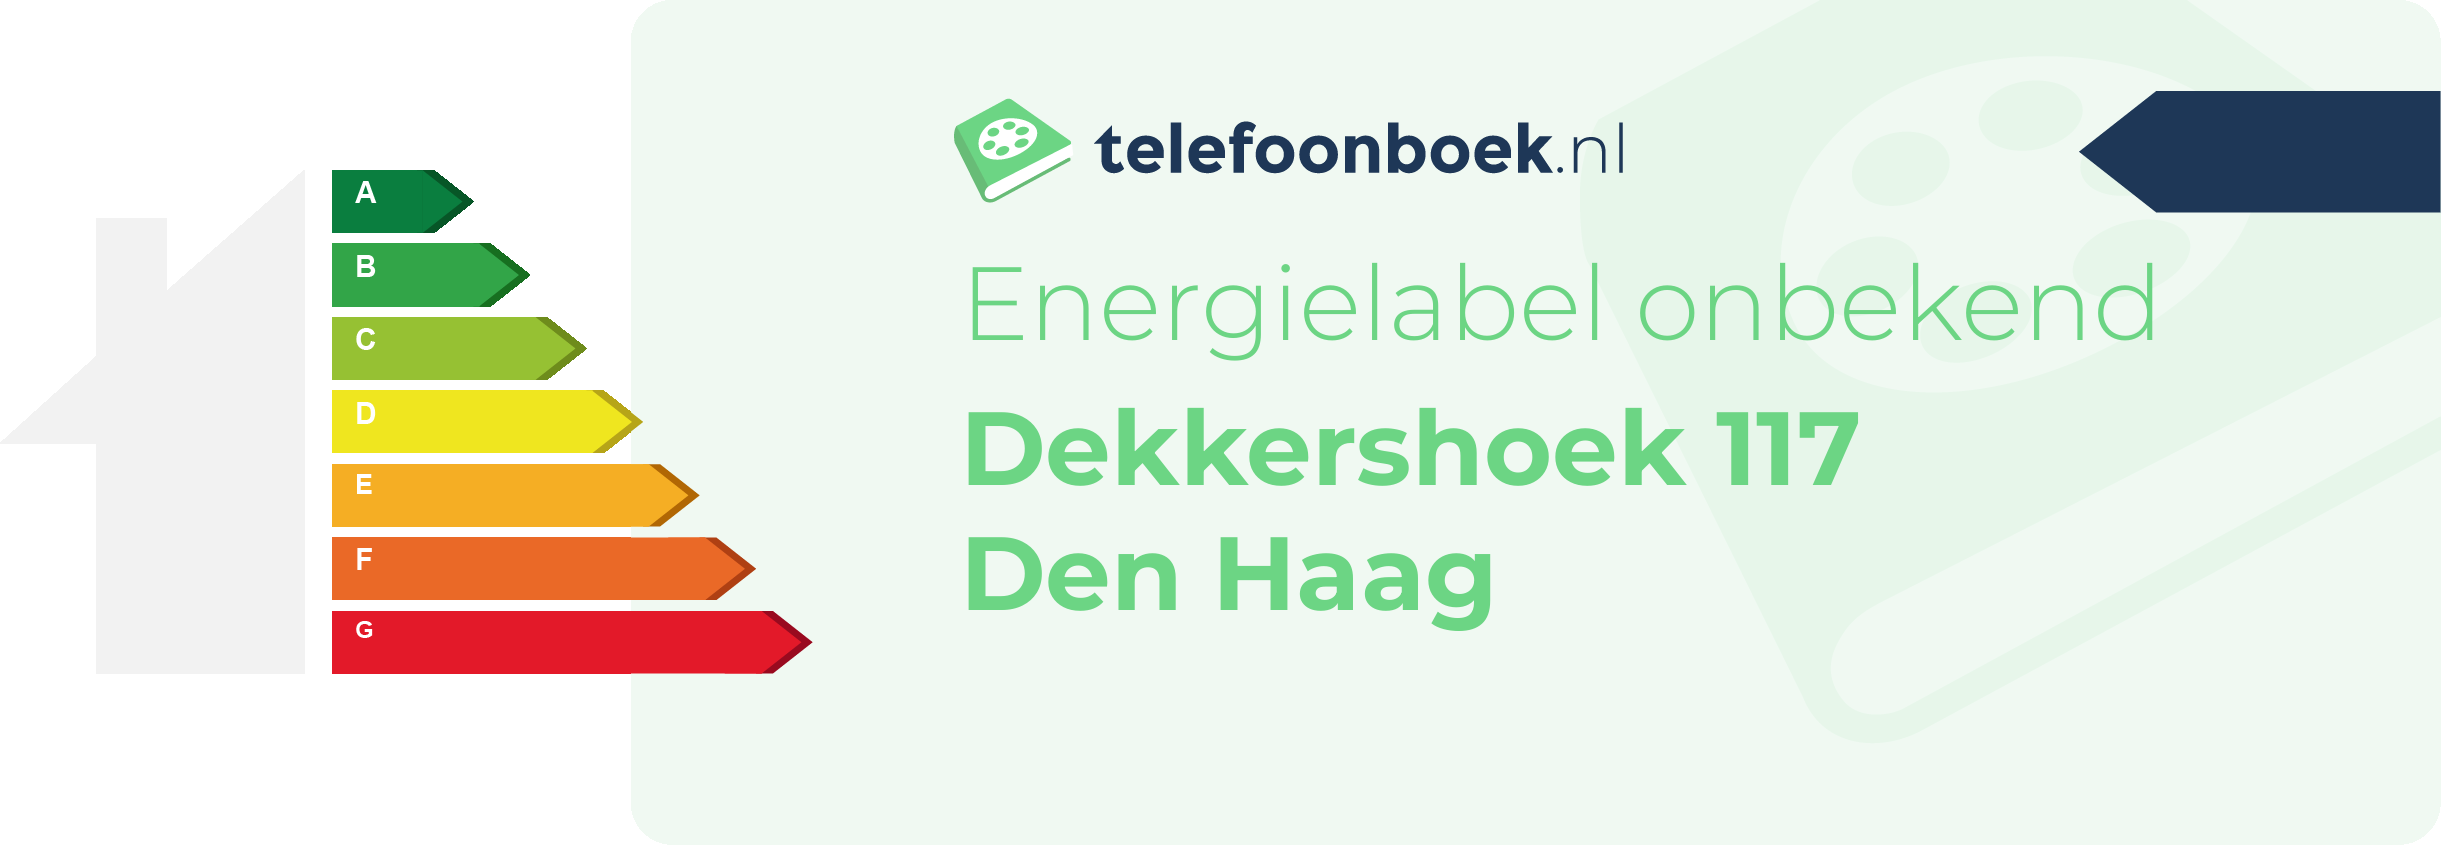 Energielabel Dekkershoek 117 Den Haag